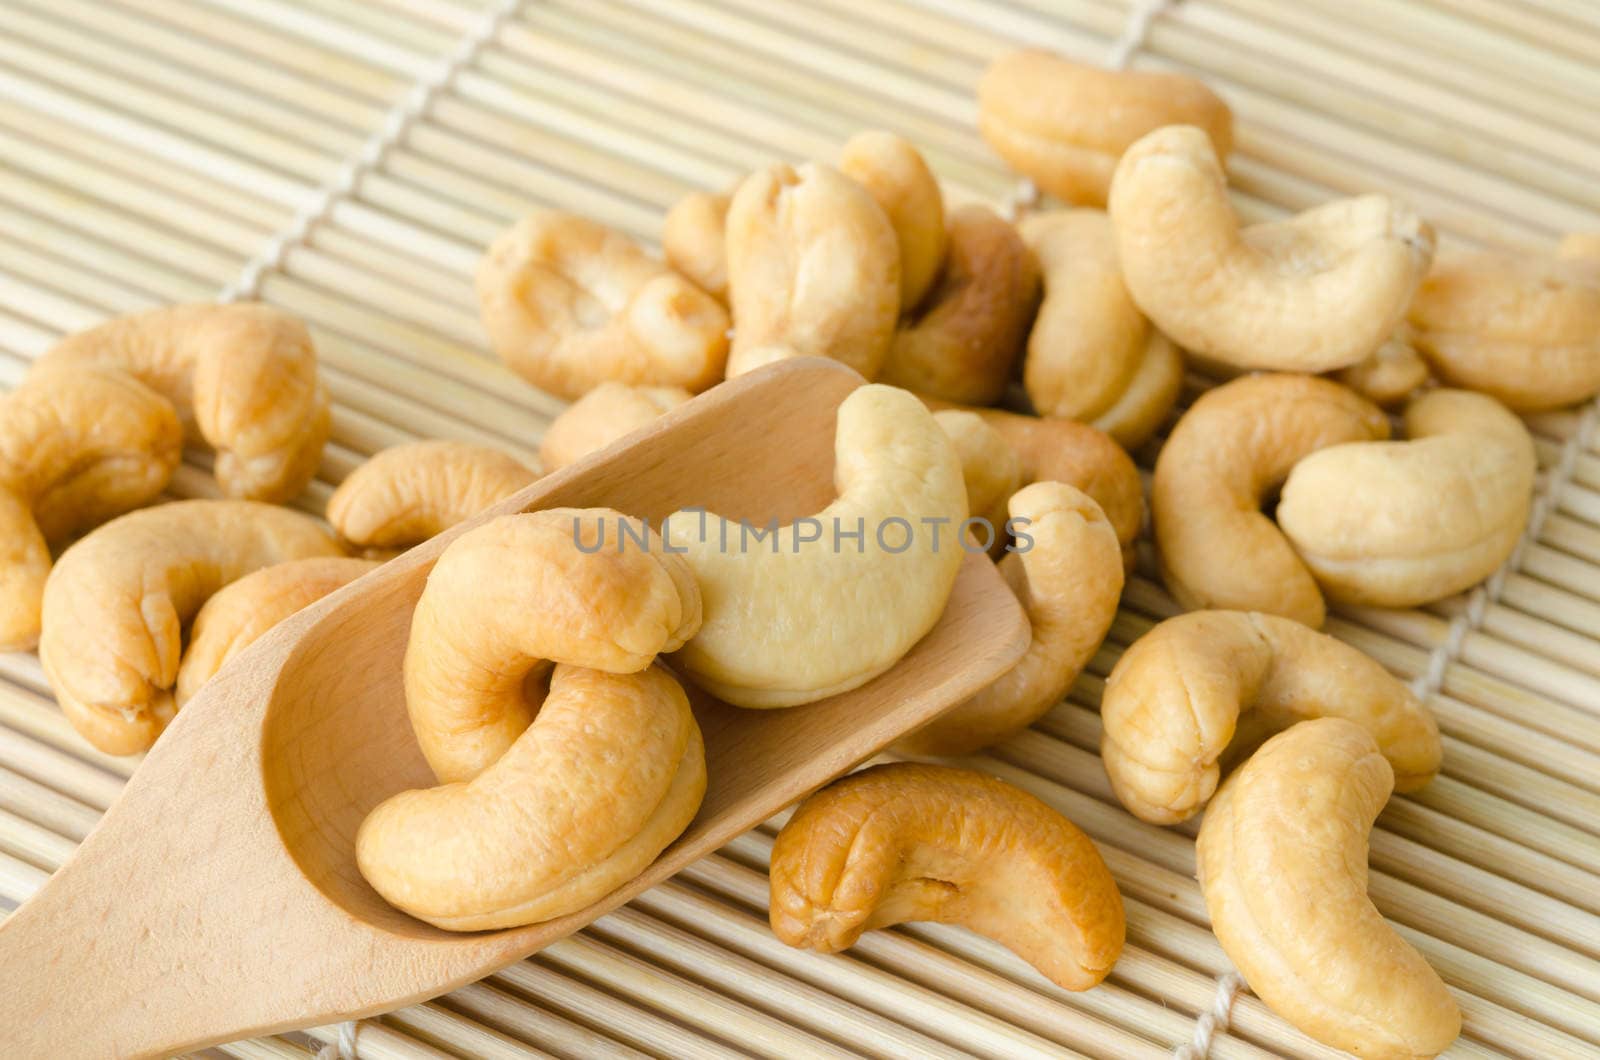 Cashew nuts with salt. by Gamjai